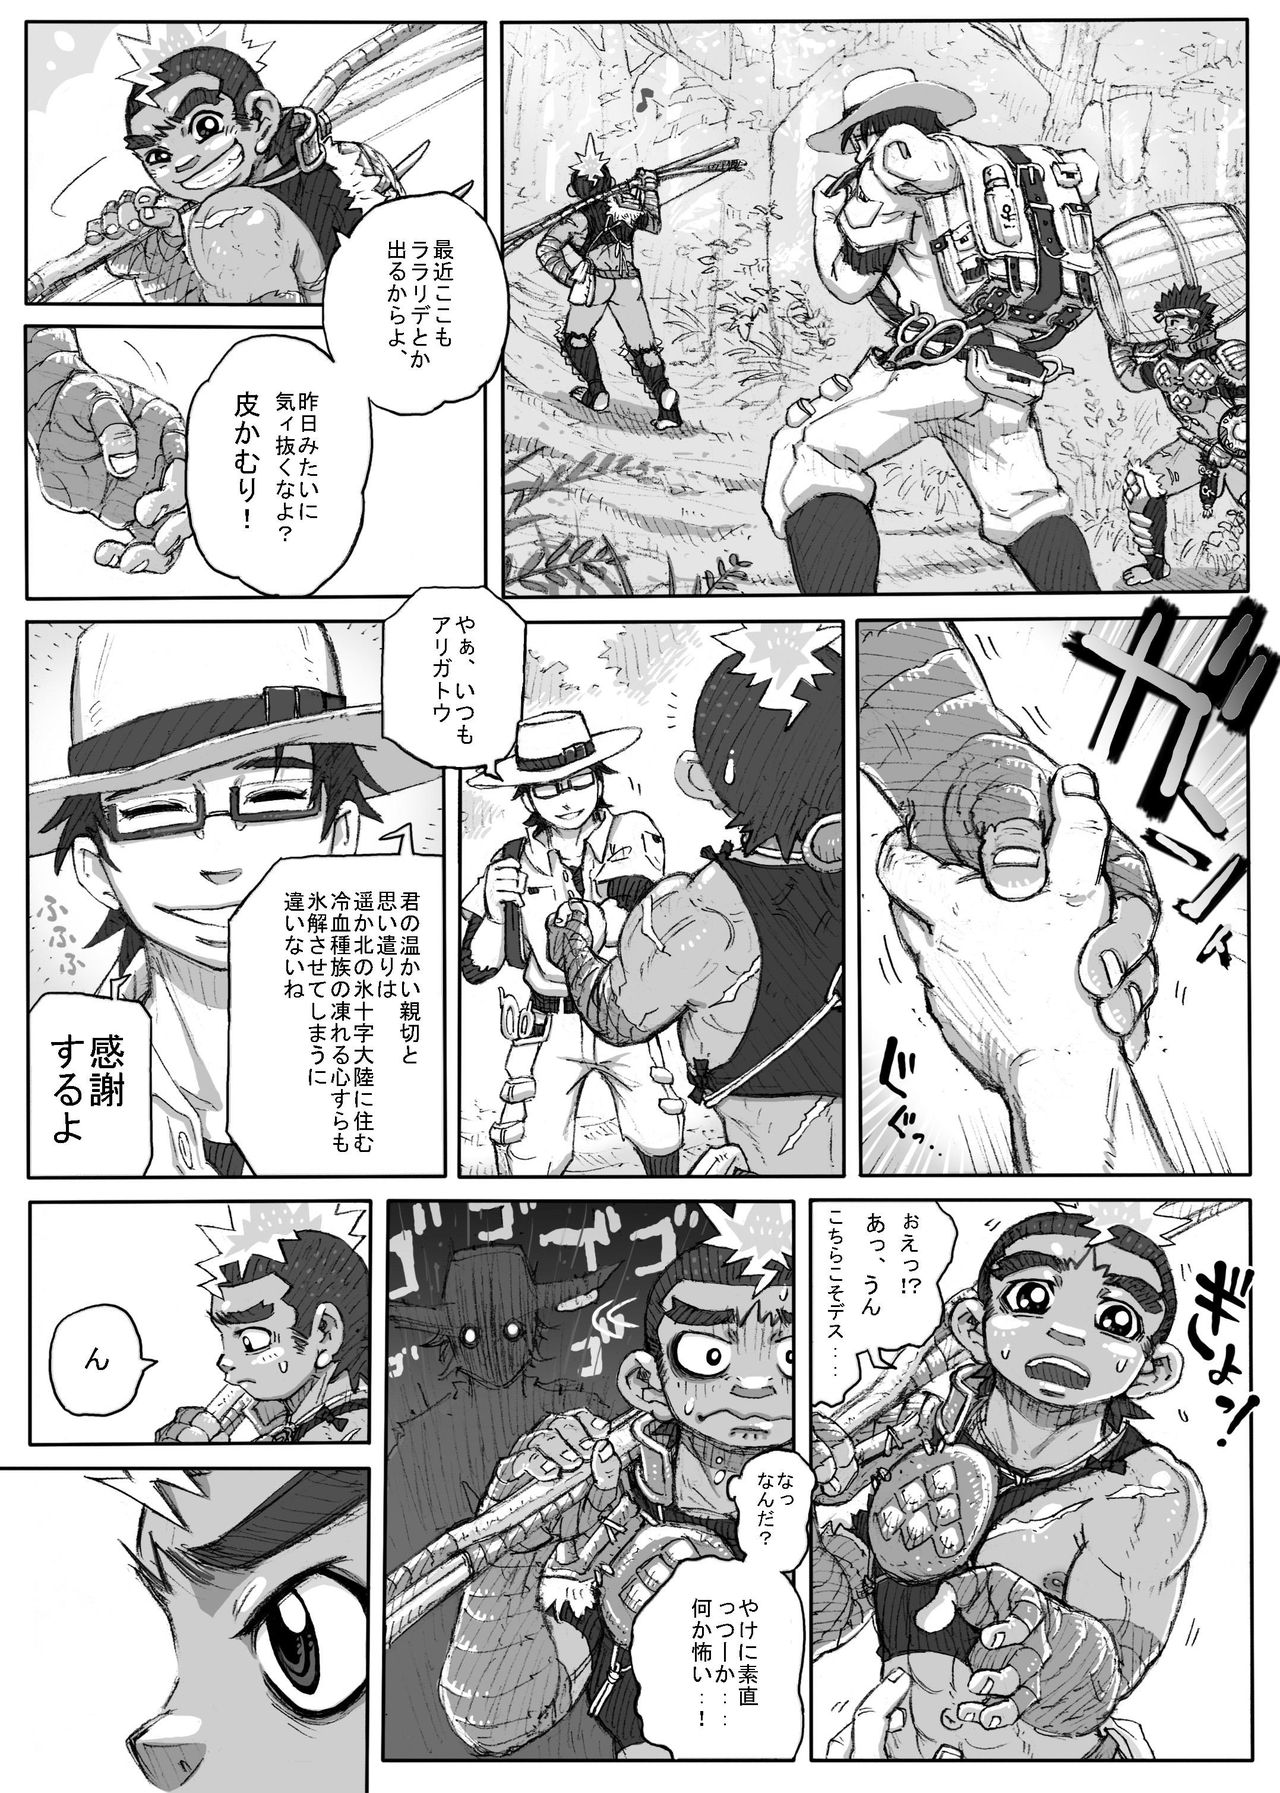 [Hastured Cake] Hepoe no Kuni kara 3 - Hinobuzoku no Shin no Sugata to Arena Sugata no Maki page 2 full